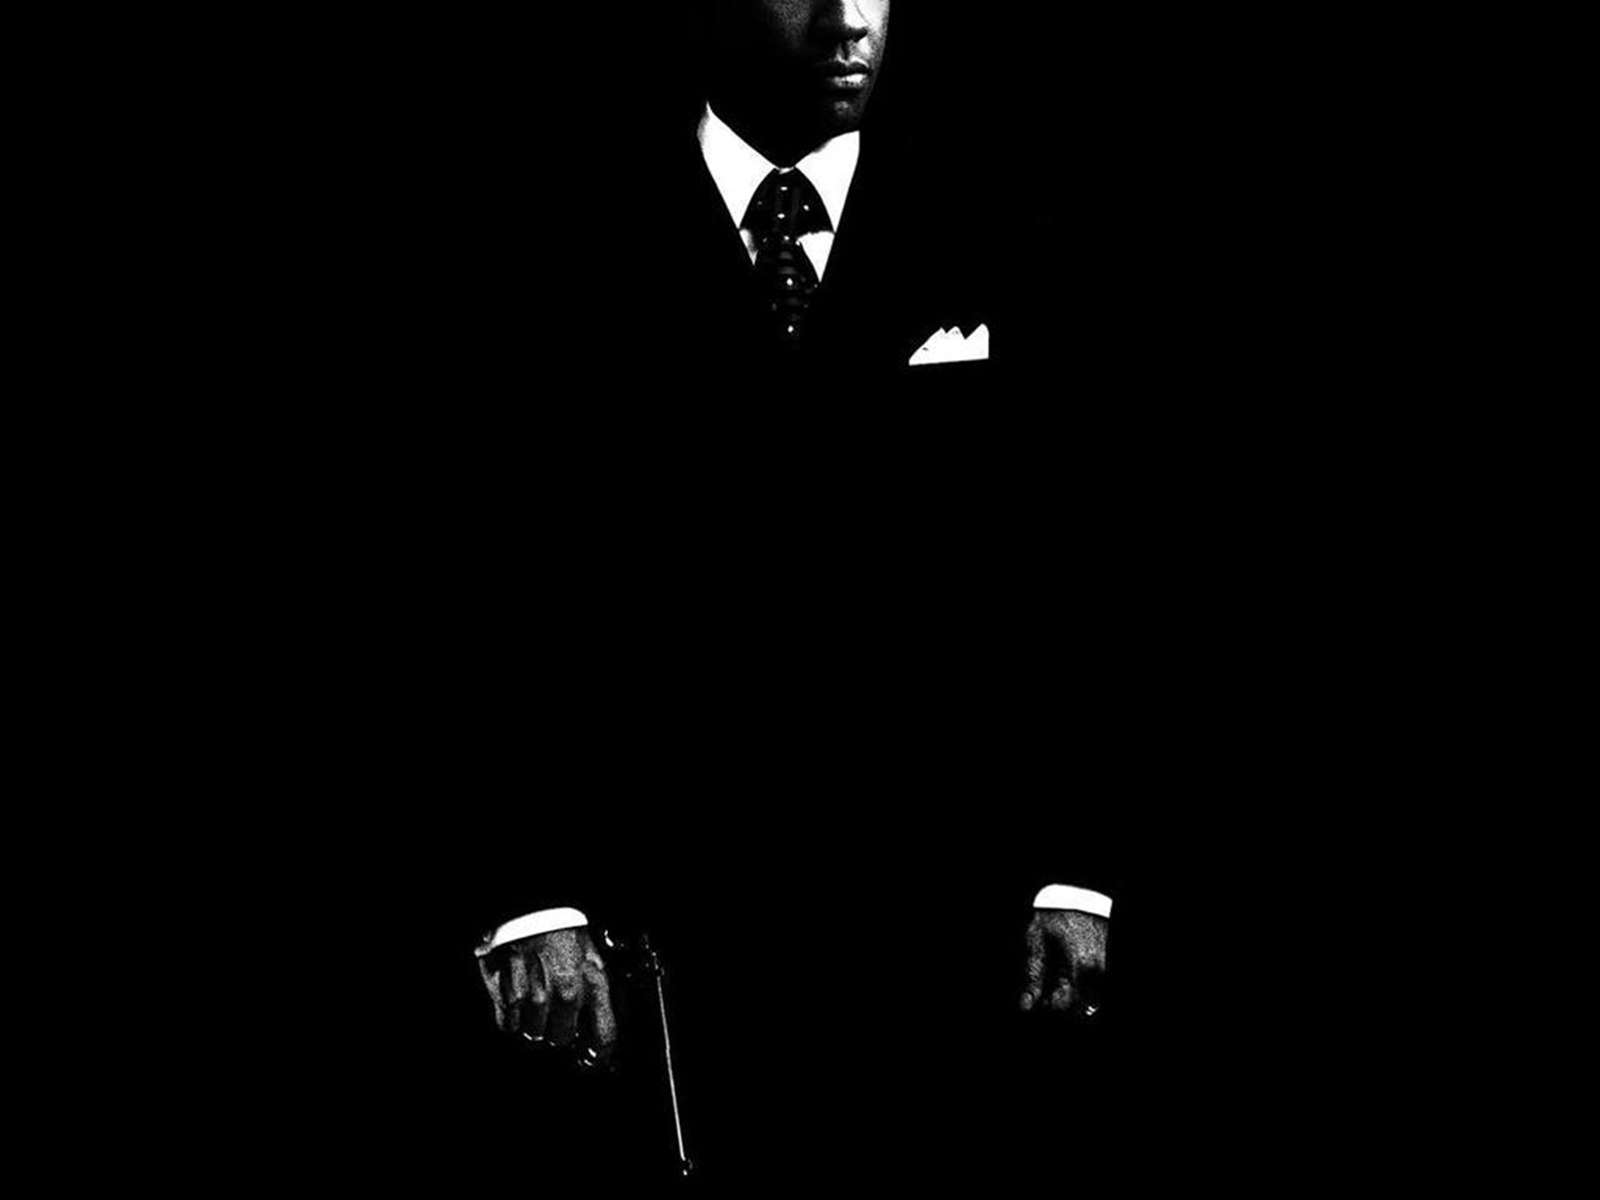 gentleman tapete,schwarz,dunkelheit,monochrome fotografie,schwarz und weiß,einfarbig